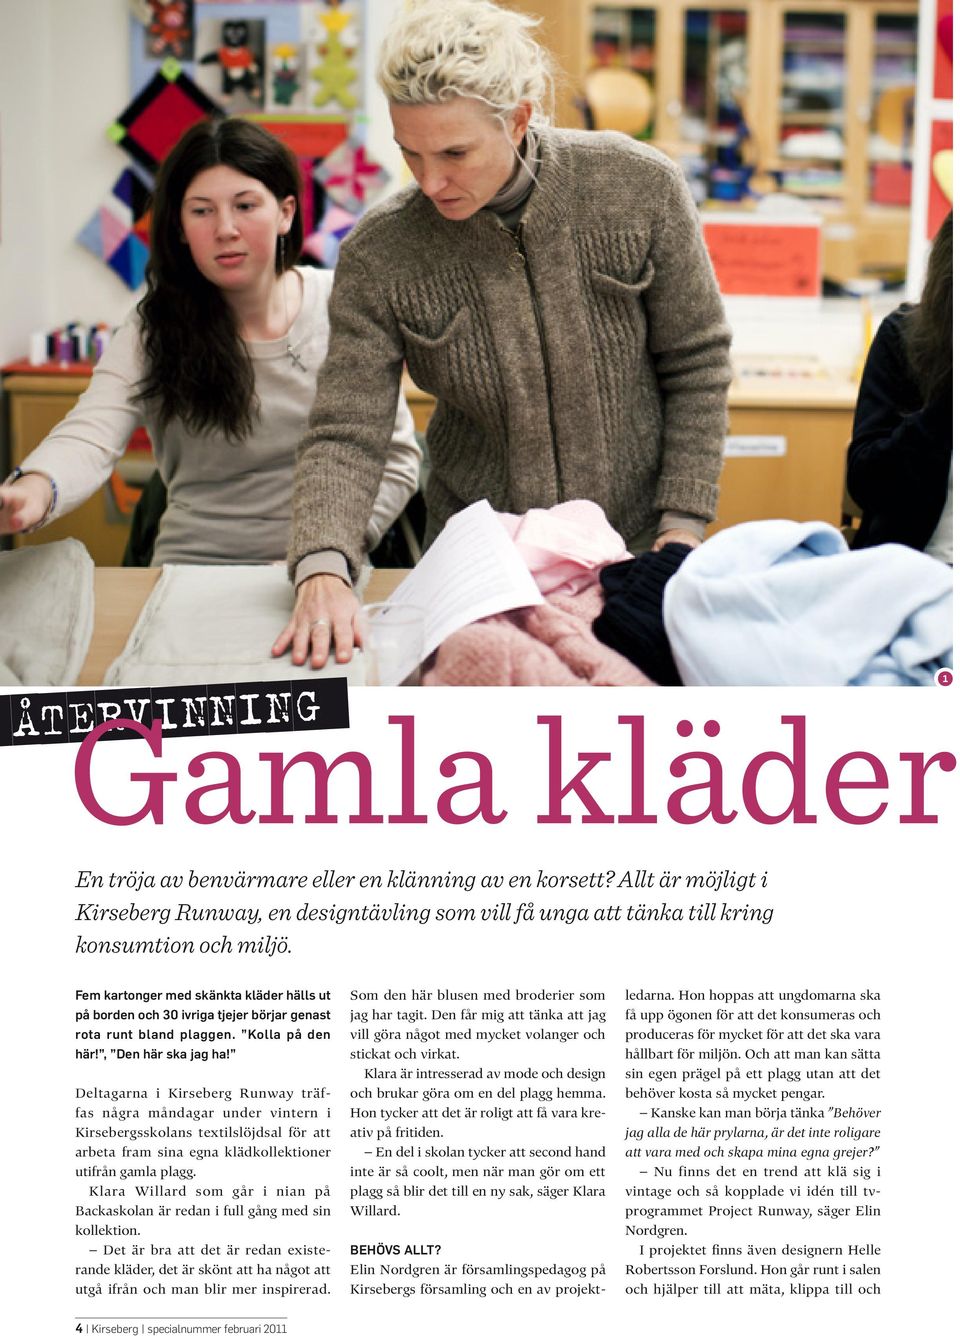 Deltagarna i Kirseberg Runway träffas några måndagar under vintern i Kirsebergsskolans textilslöjdsal för att arbeta fram sina egna klädkollektioner utifrån gamla plagg.